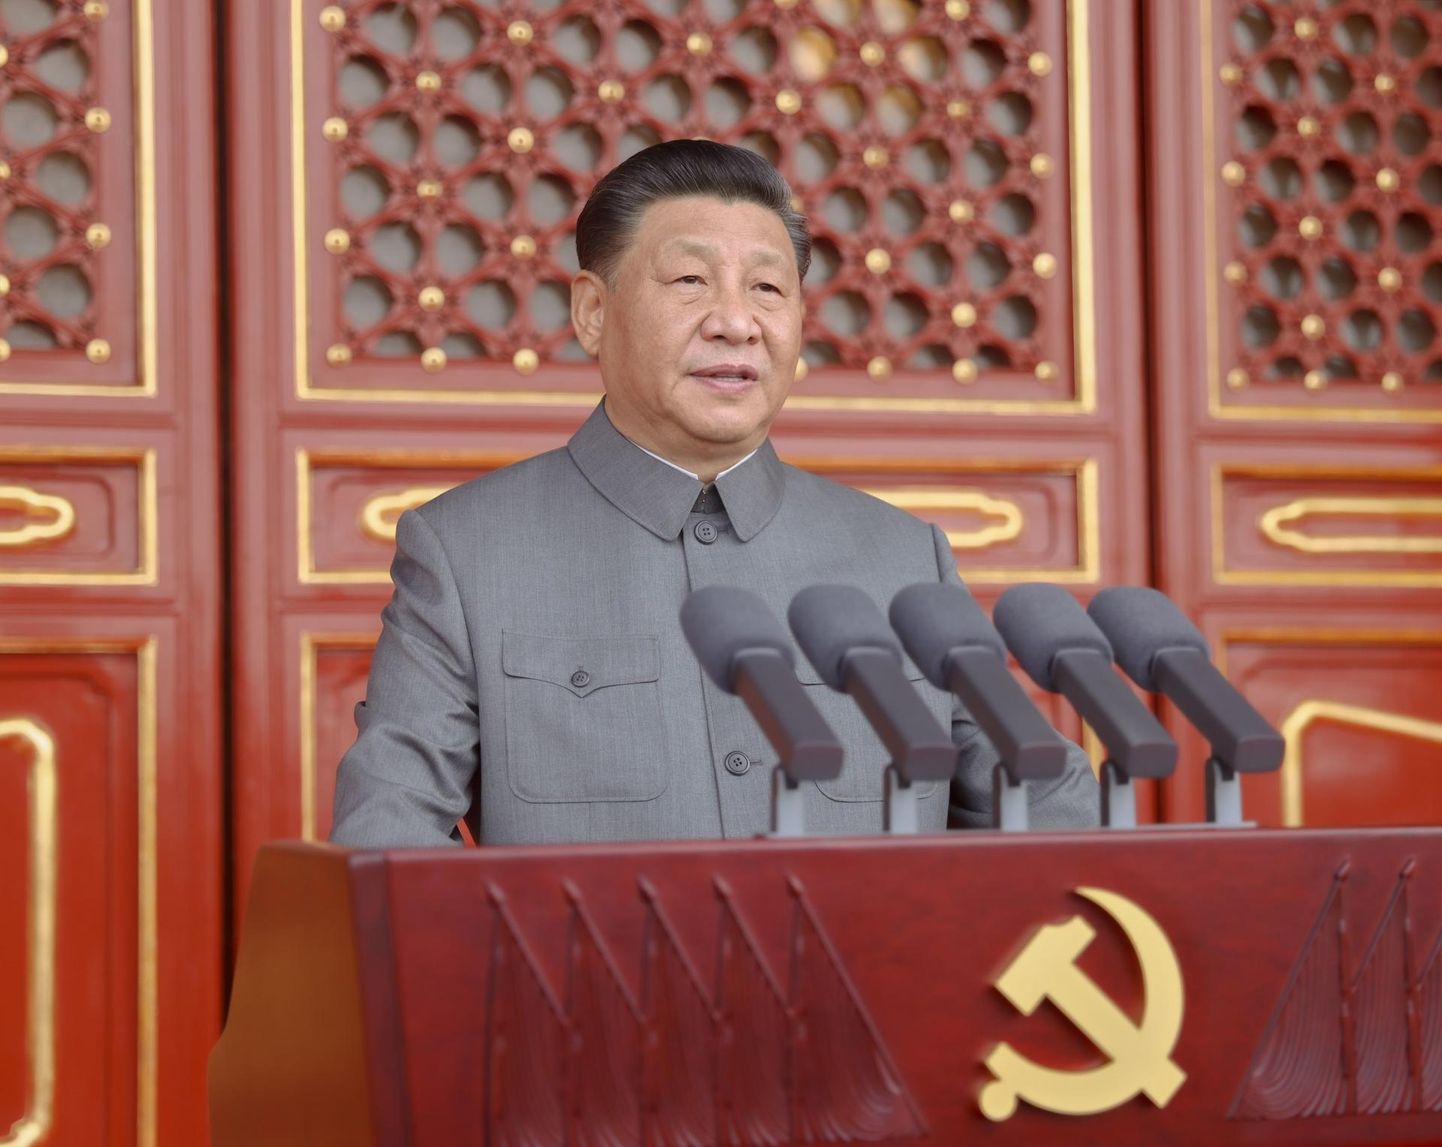 Hiina president ja Hiina Kommunistliku Partei peasekretär Xi Jinping peab kõnet Hiina Kommunistliku Partei asutamise 100. aastapäeva puhul Pekingis 01.07.2021